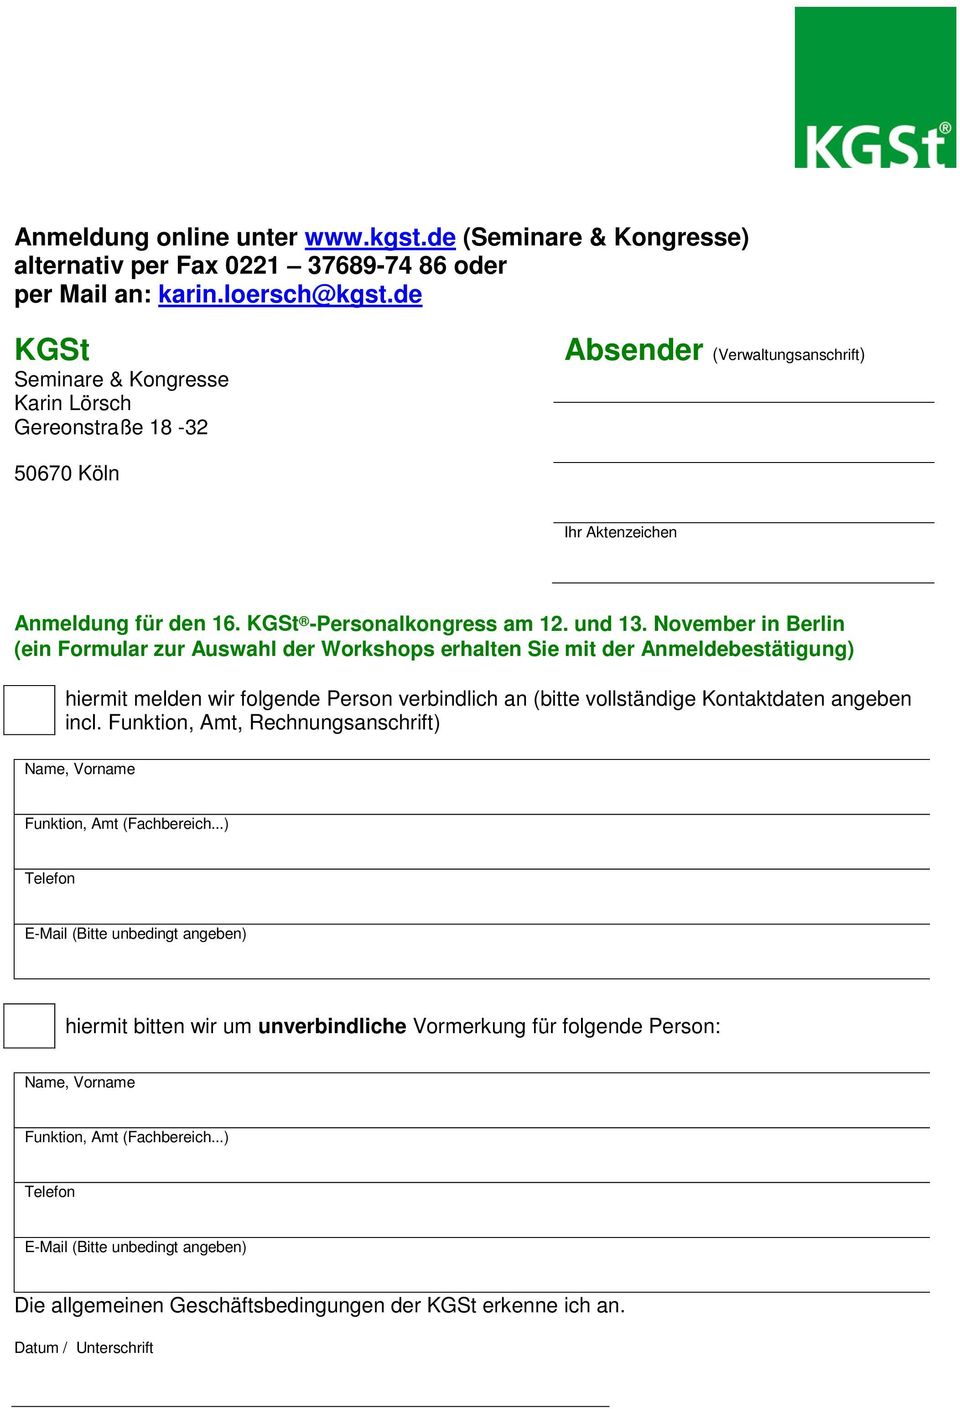 November in Berlin (ein Formular zur Auswahl der Workshops erhalten Sie mit der Anmeldebestätigung) hiermit melden wir folgende Person verbindlich an (bitte vollständige Kontaktdaten angeben incl.